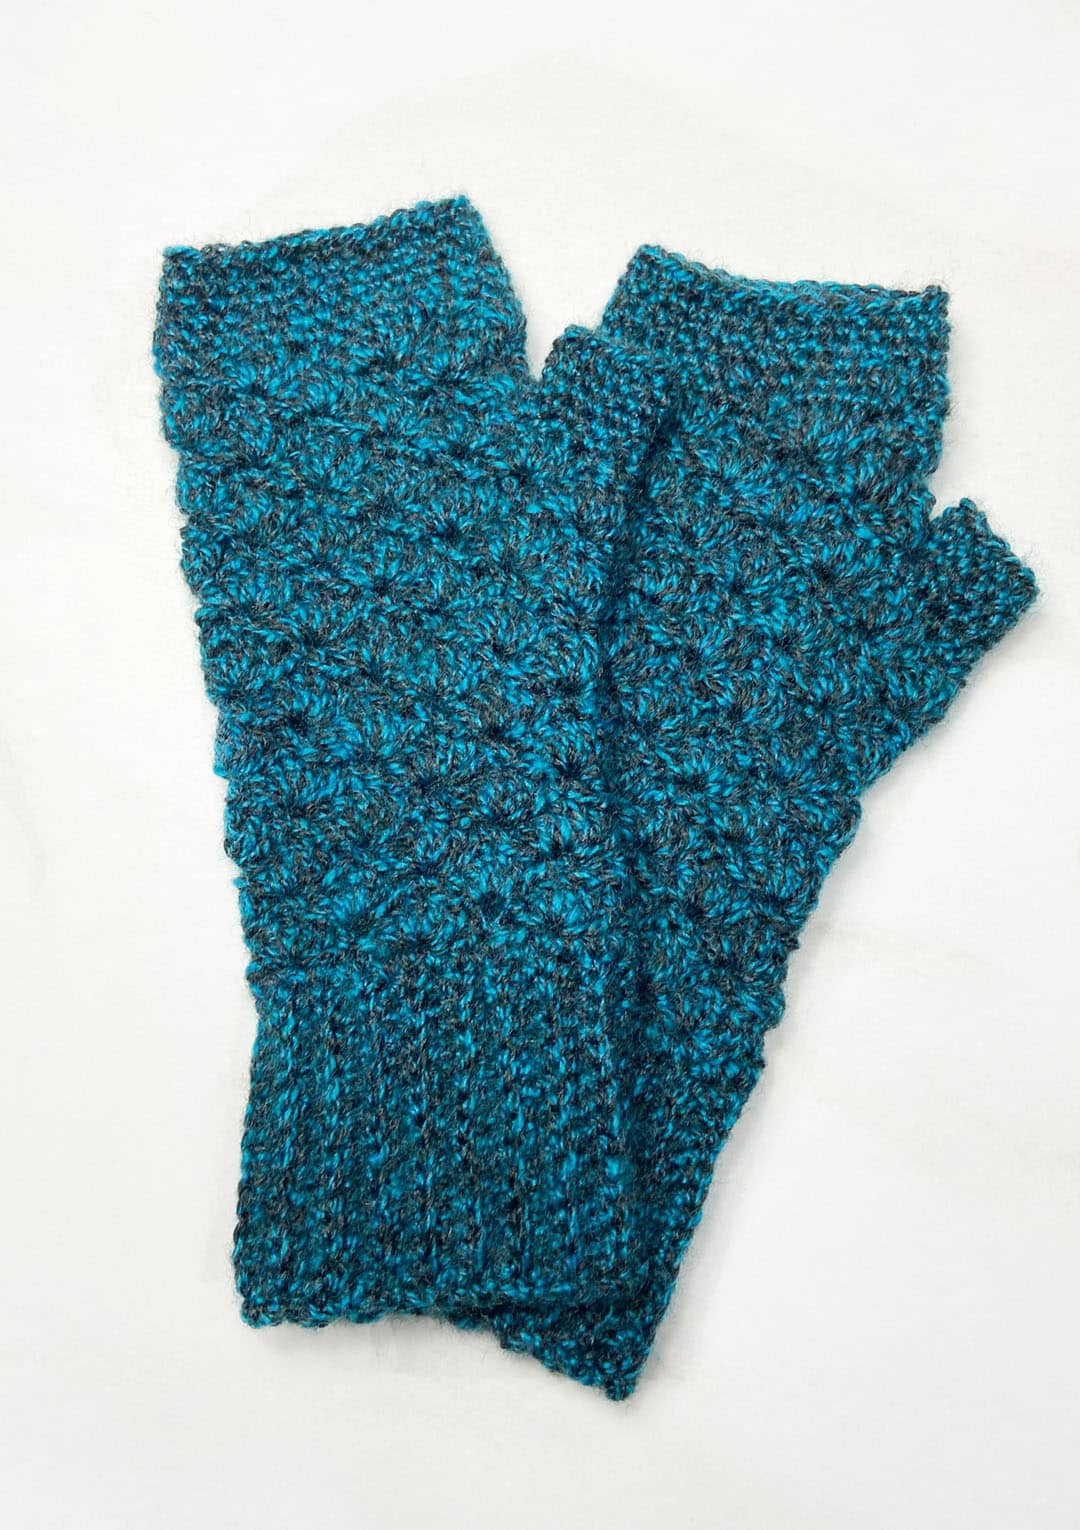 crochet gloves